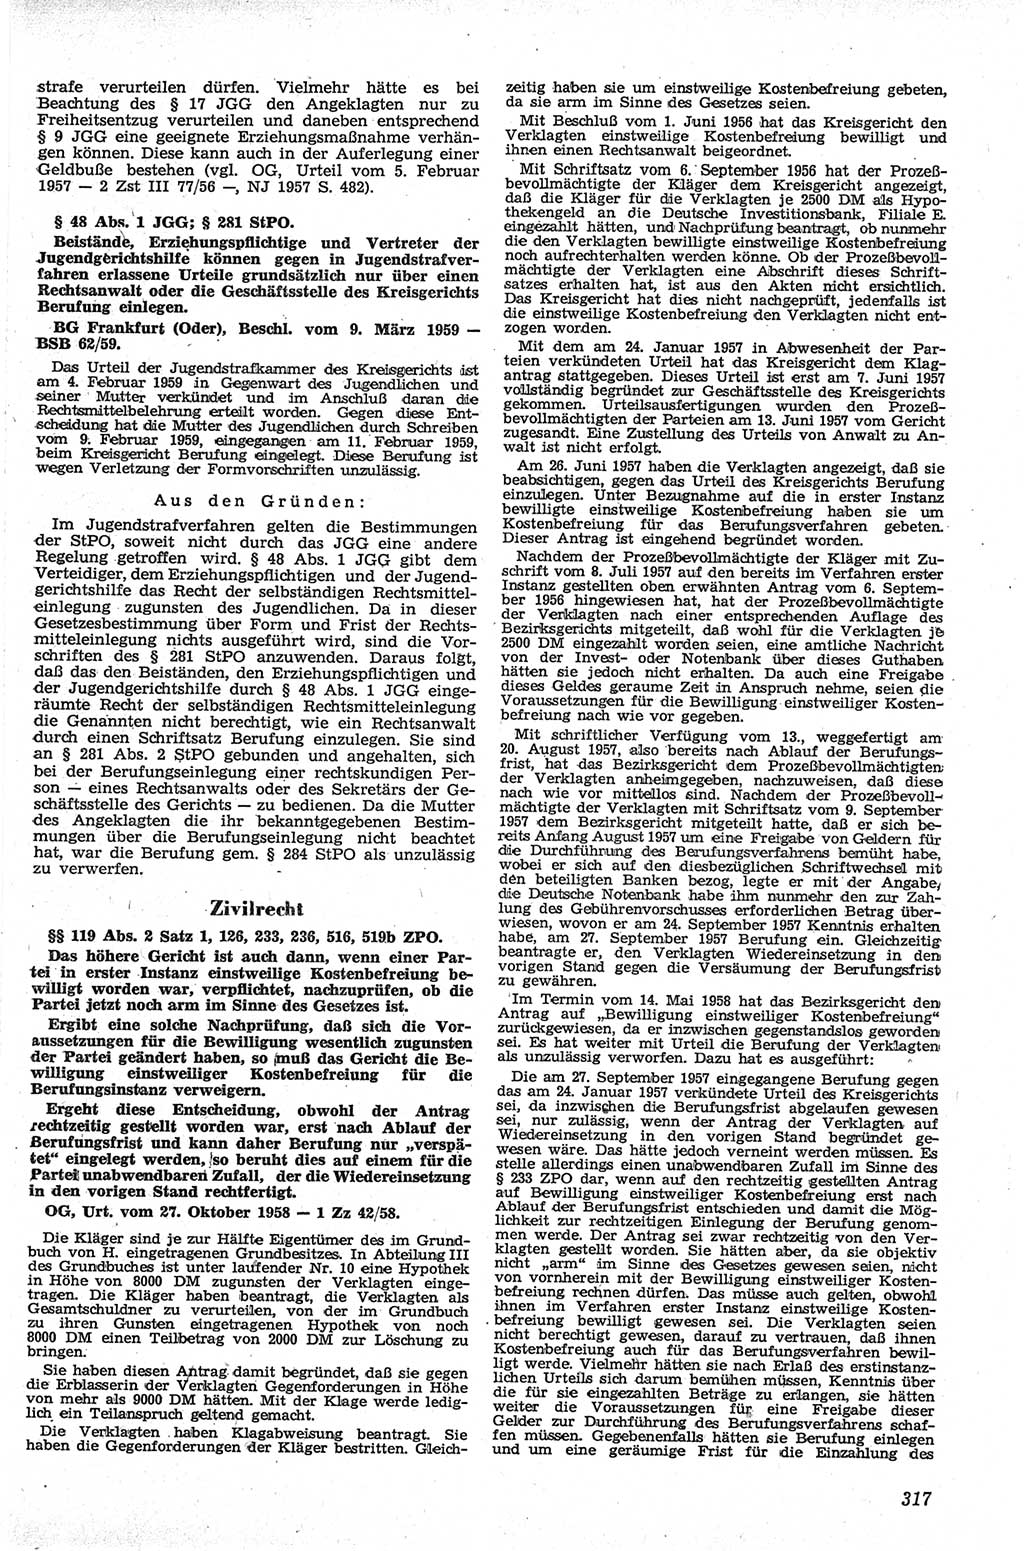 Neue Justiz (NJ), Zeitschrift für Recht und Rechtswissenschaft [Deutsche Demokratische Republik (DDR)], 13. Jahrgang 1959, Seite 317 (NJ DDR 1959, S. 317)